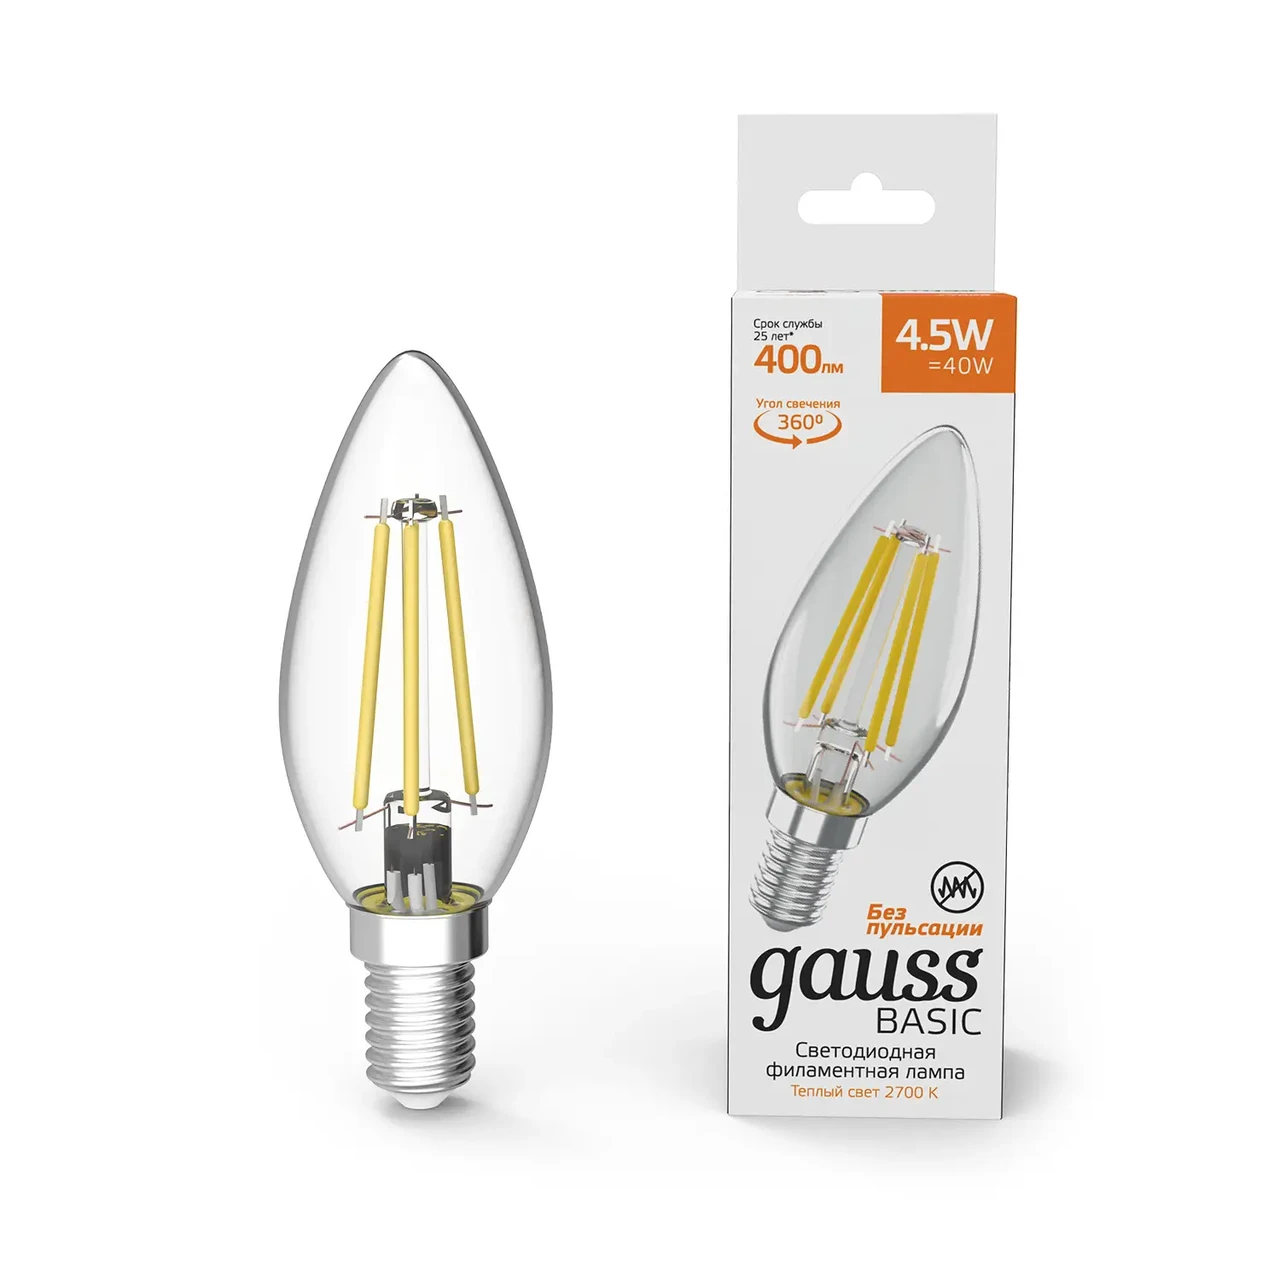 Лампа Gauss Basic Filament Свеча 4,5W 400lm 2700К Е14 LED 1/10/50, фото 1